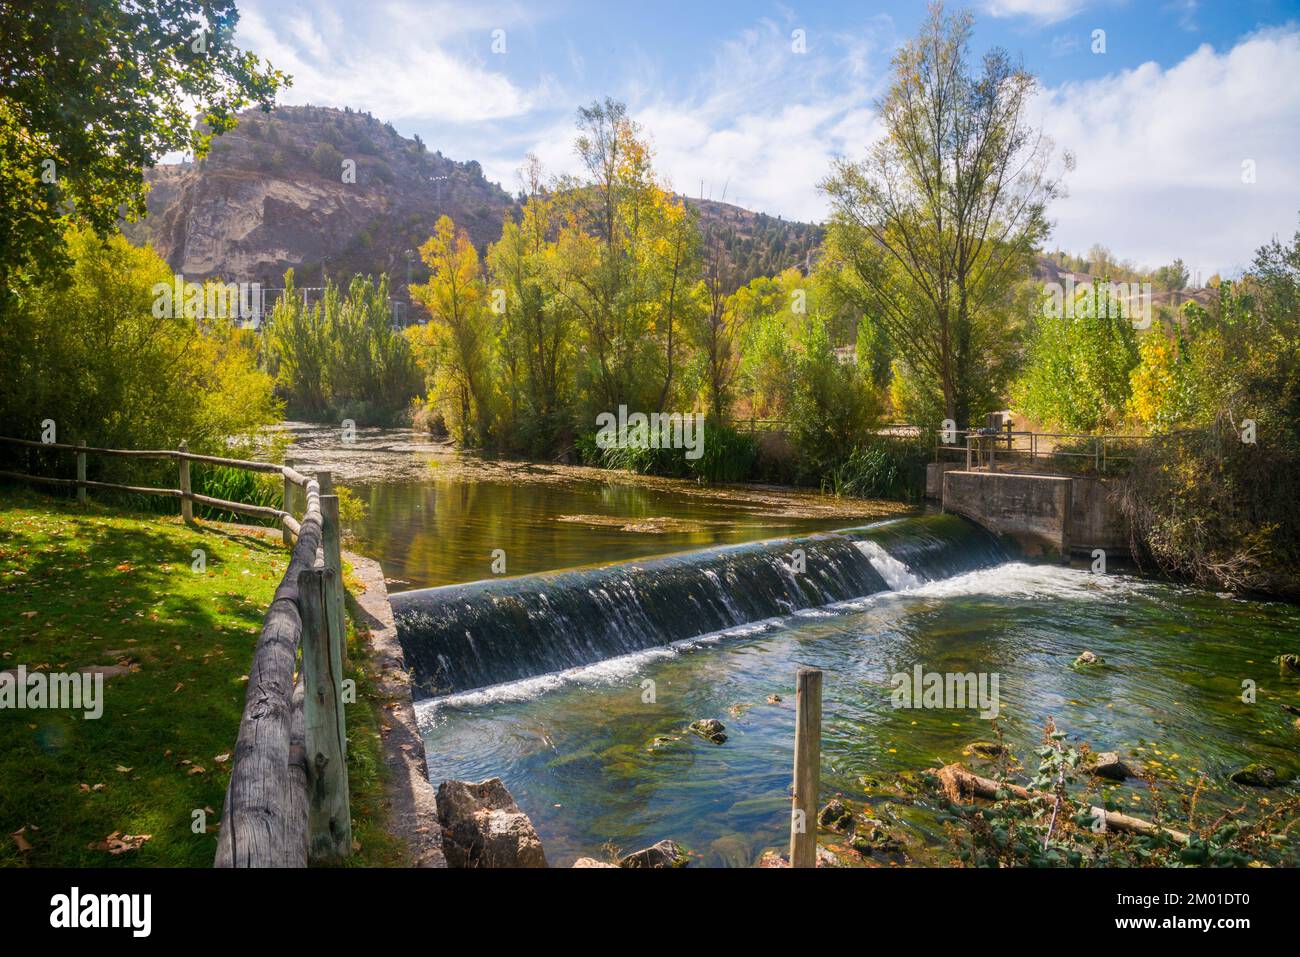 River Duraton. Burgomillodo, Segovia province, Castilla Leon, Spain. Stock Photo